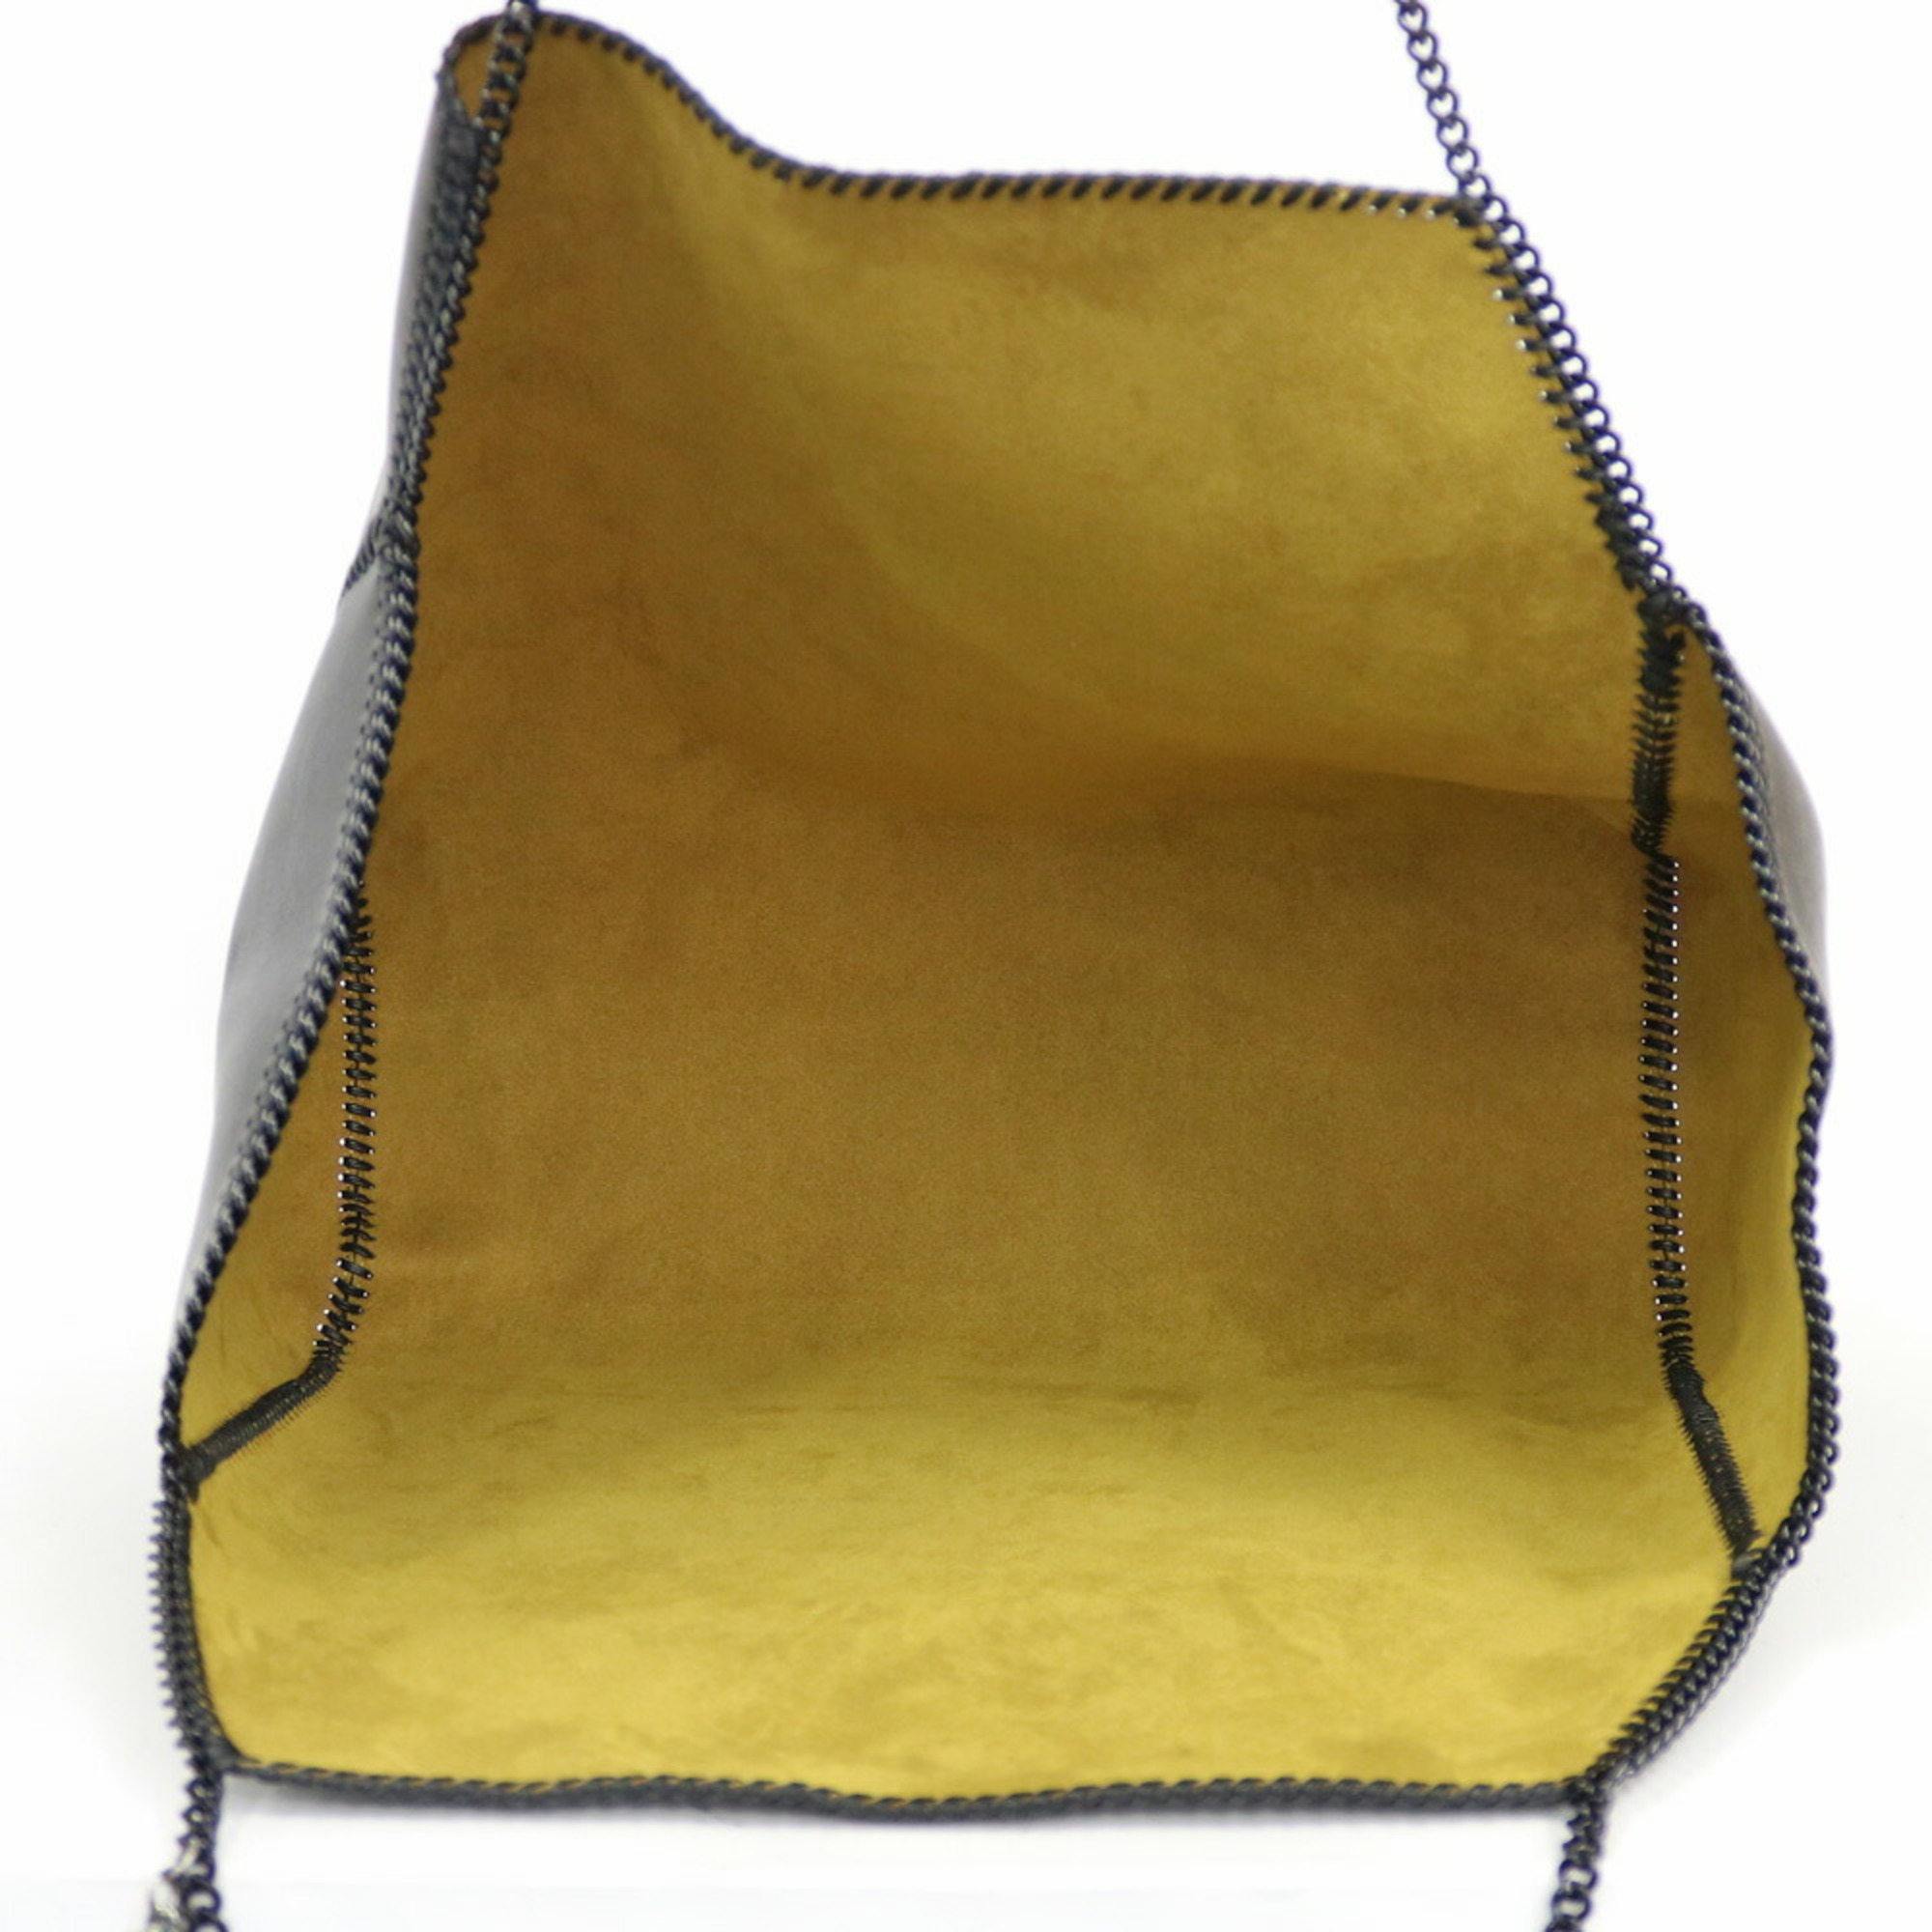 Stella McCartney Shoulder Bag Polyester Black Women's Tote BRB01000000003635